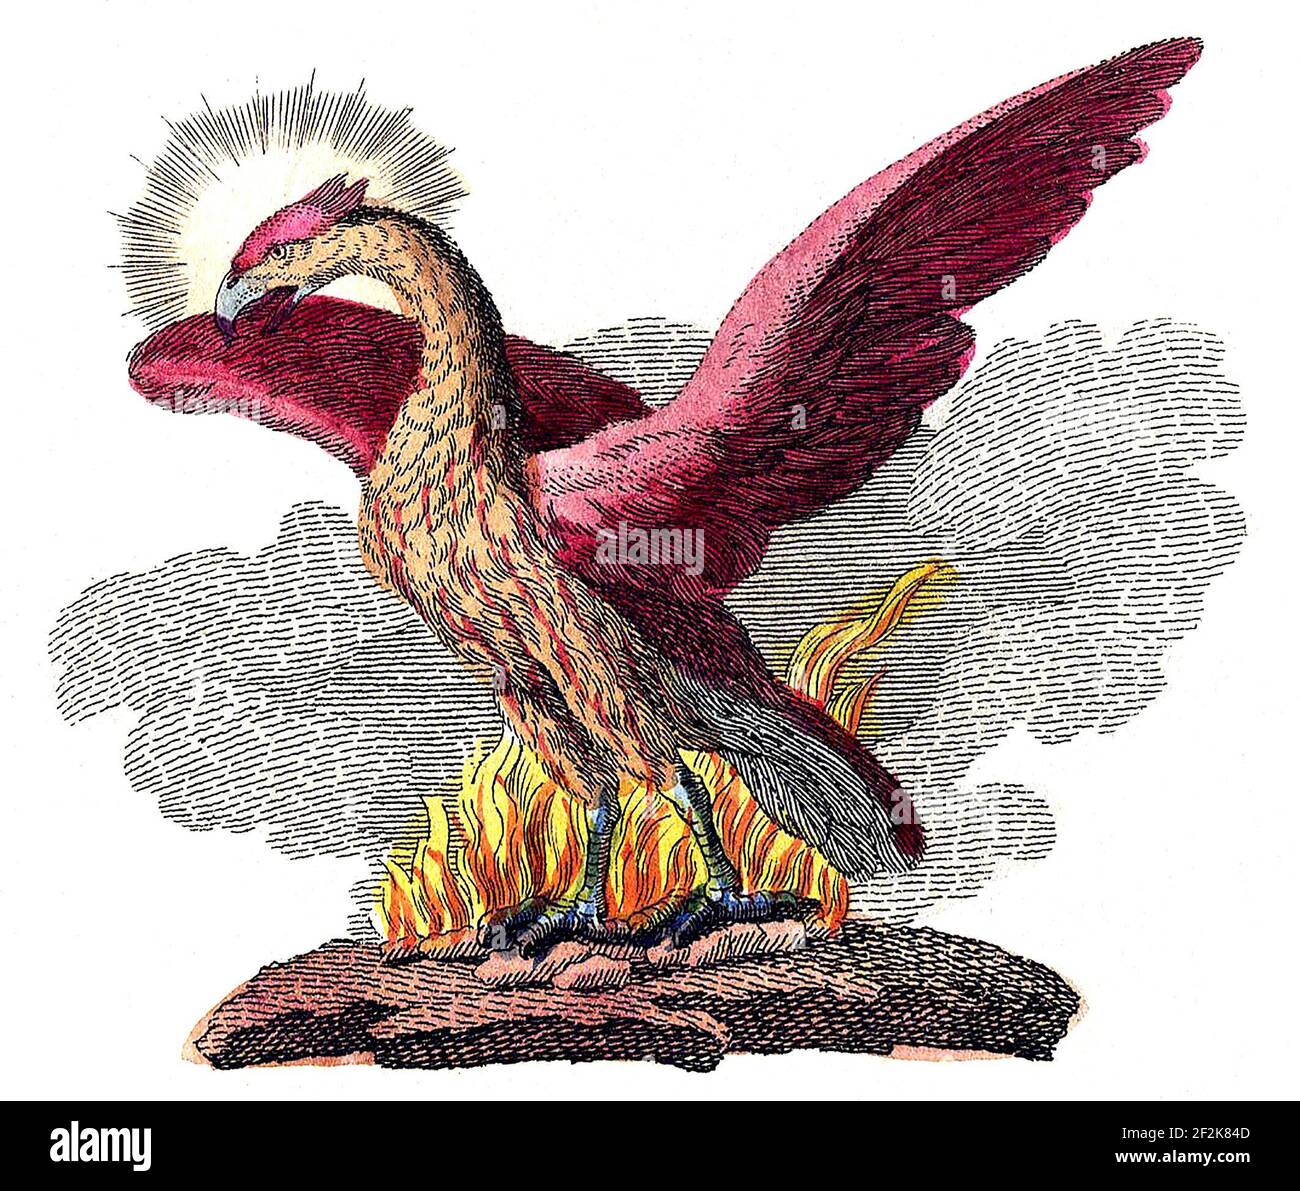 Phoenix. Illustrazione dell'uccello mitico da un libro dei bambini, 1806 Foto Stock